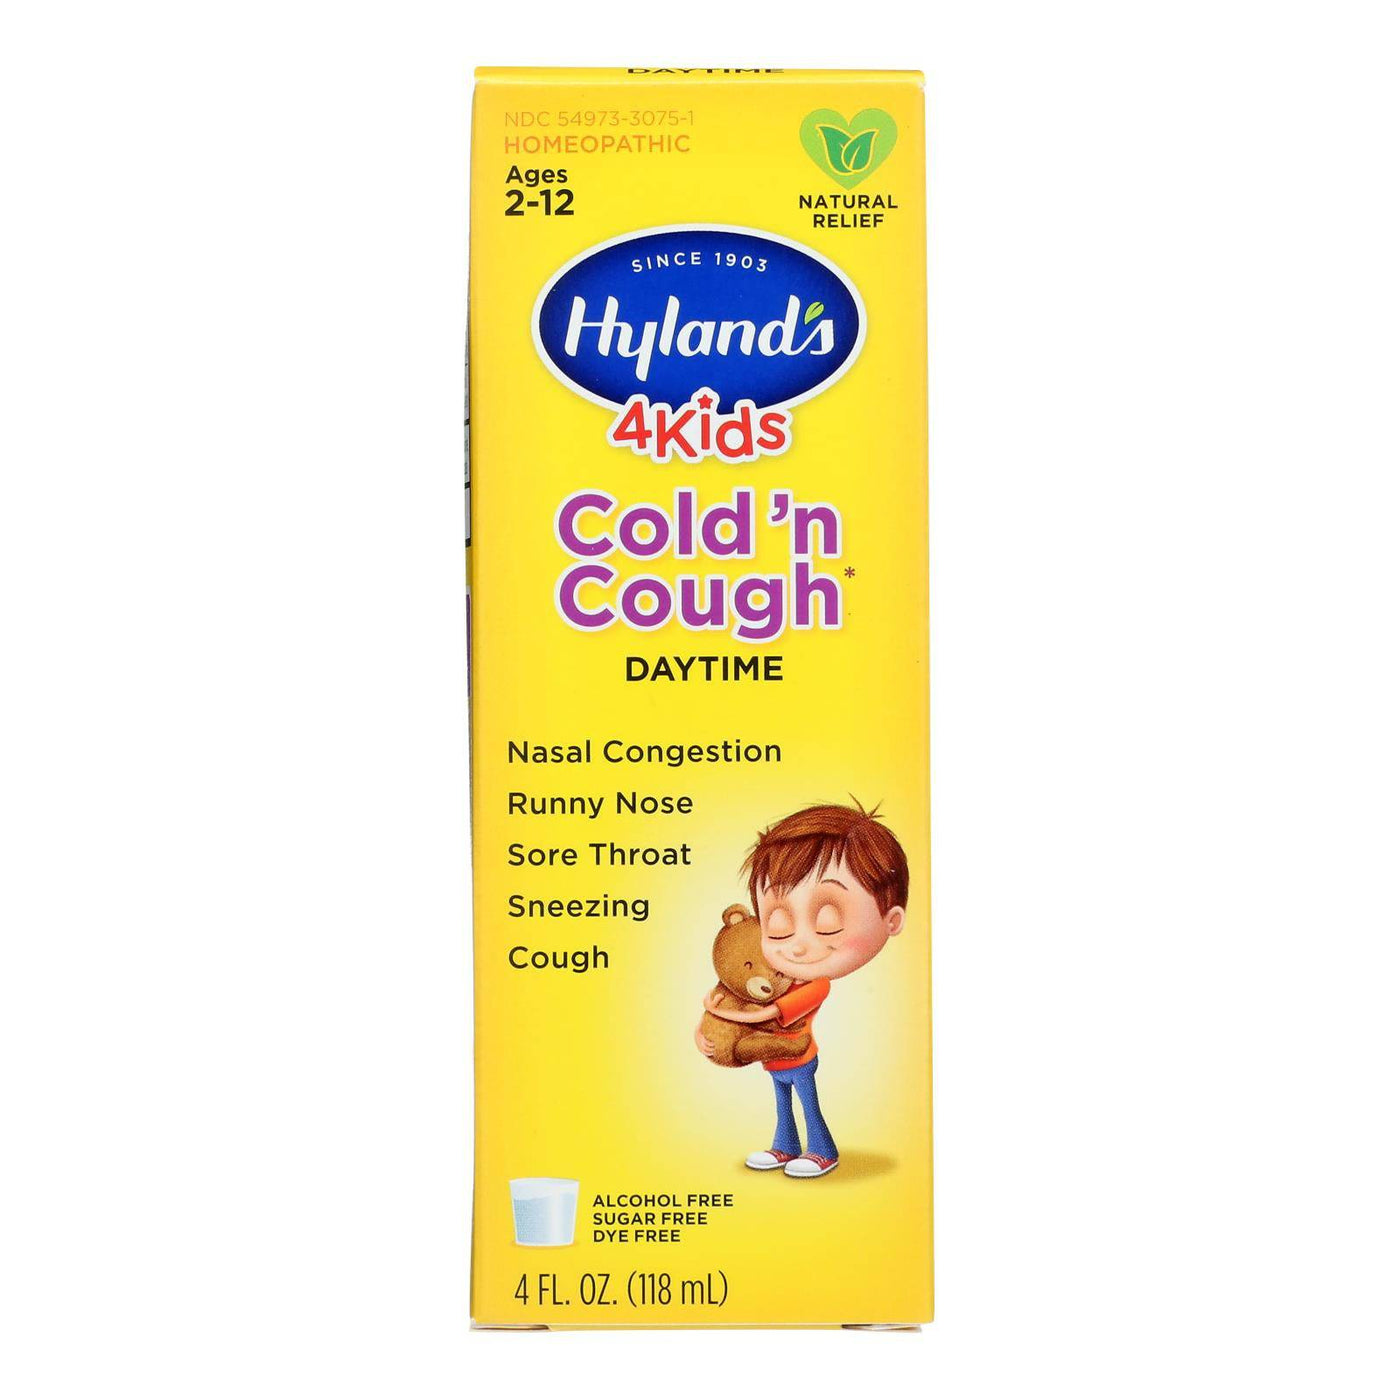 Hyland's Cold 'n Cough 4 Kids - 4 Fl Oz | OnlyNaturals.us